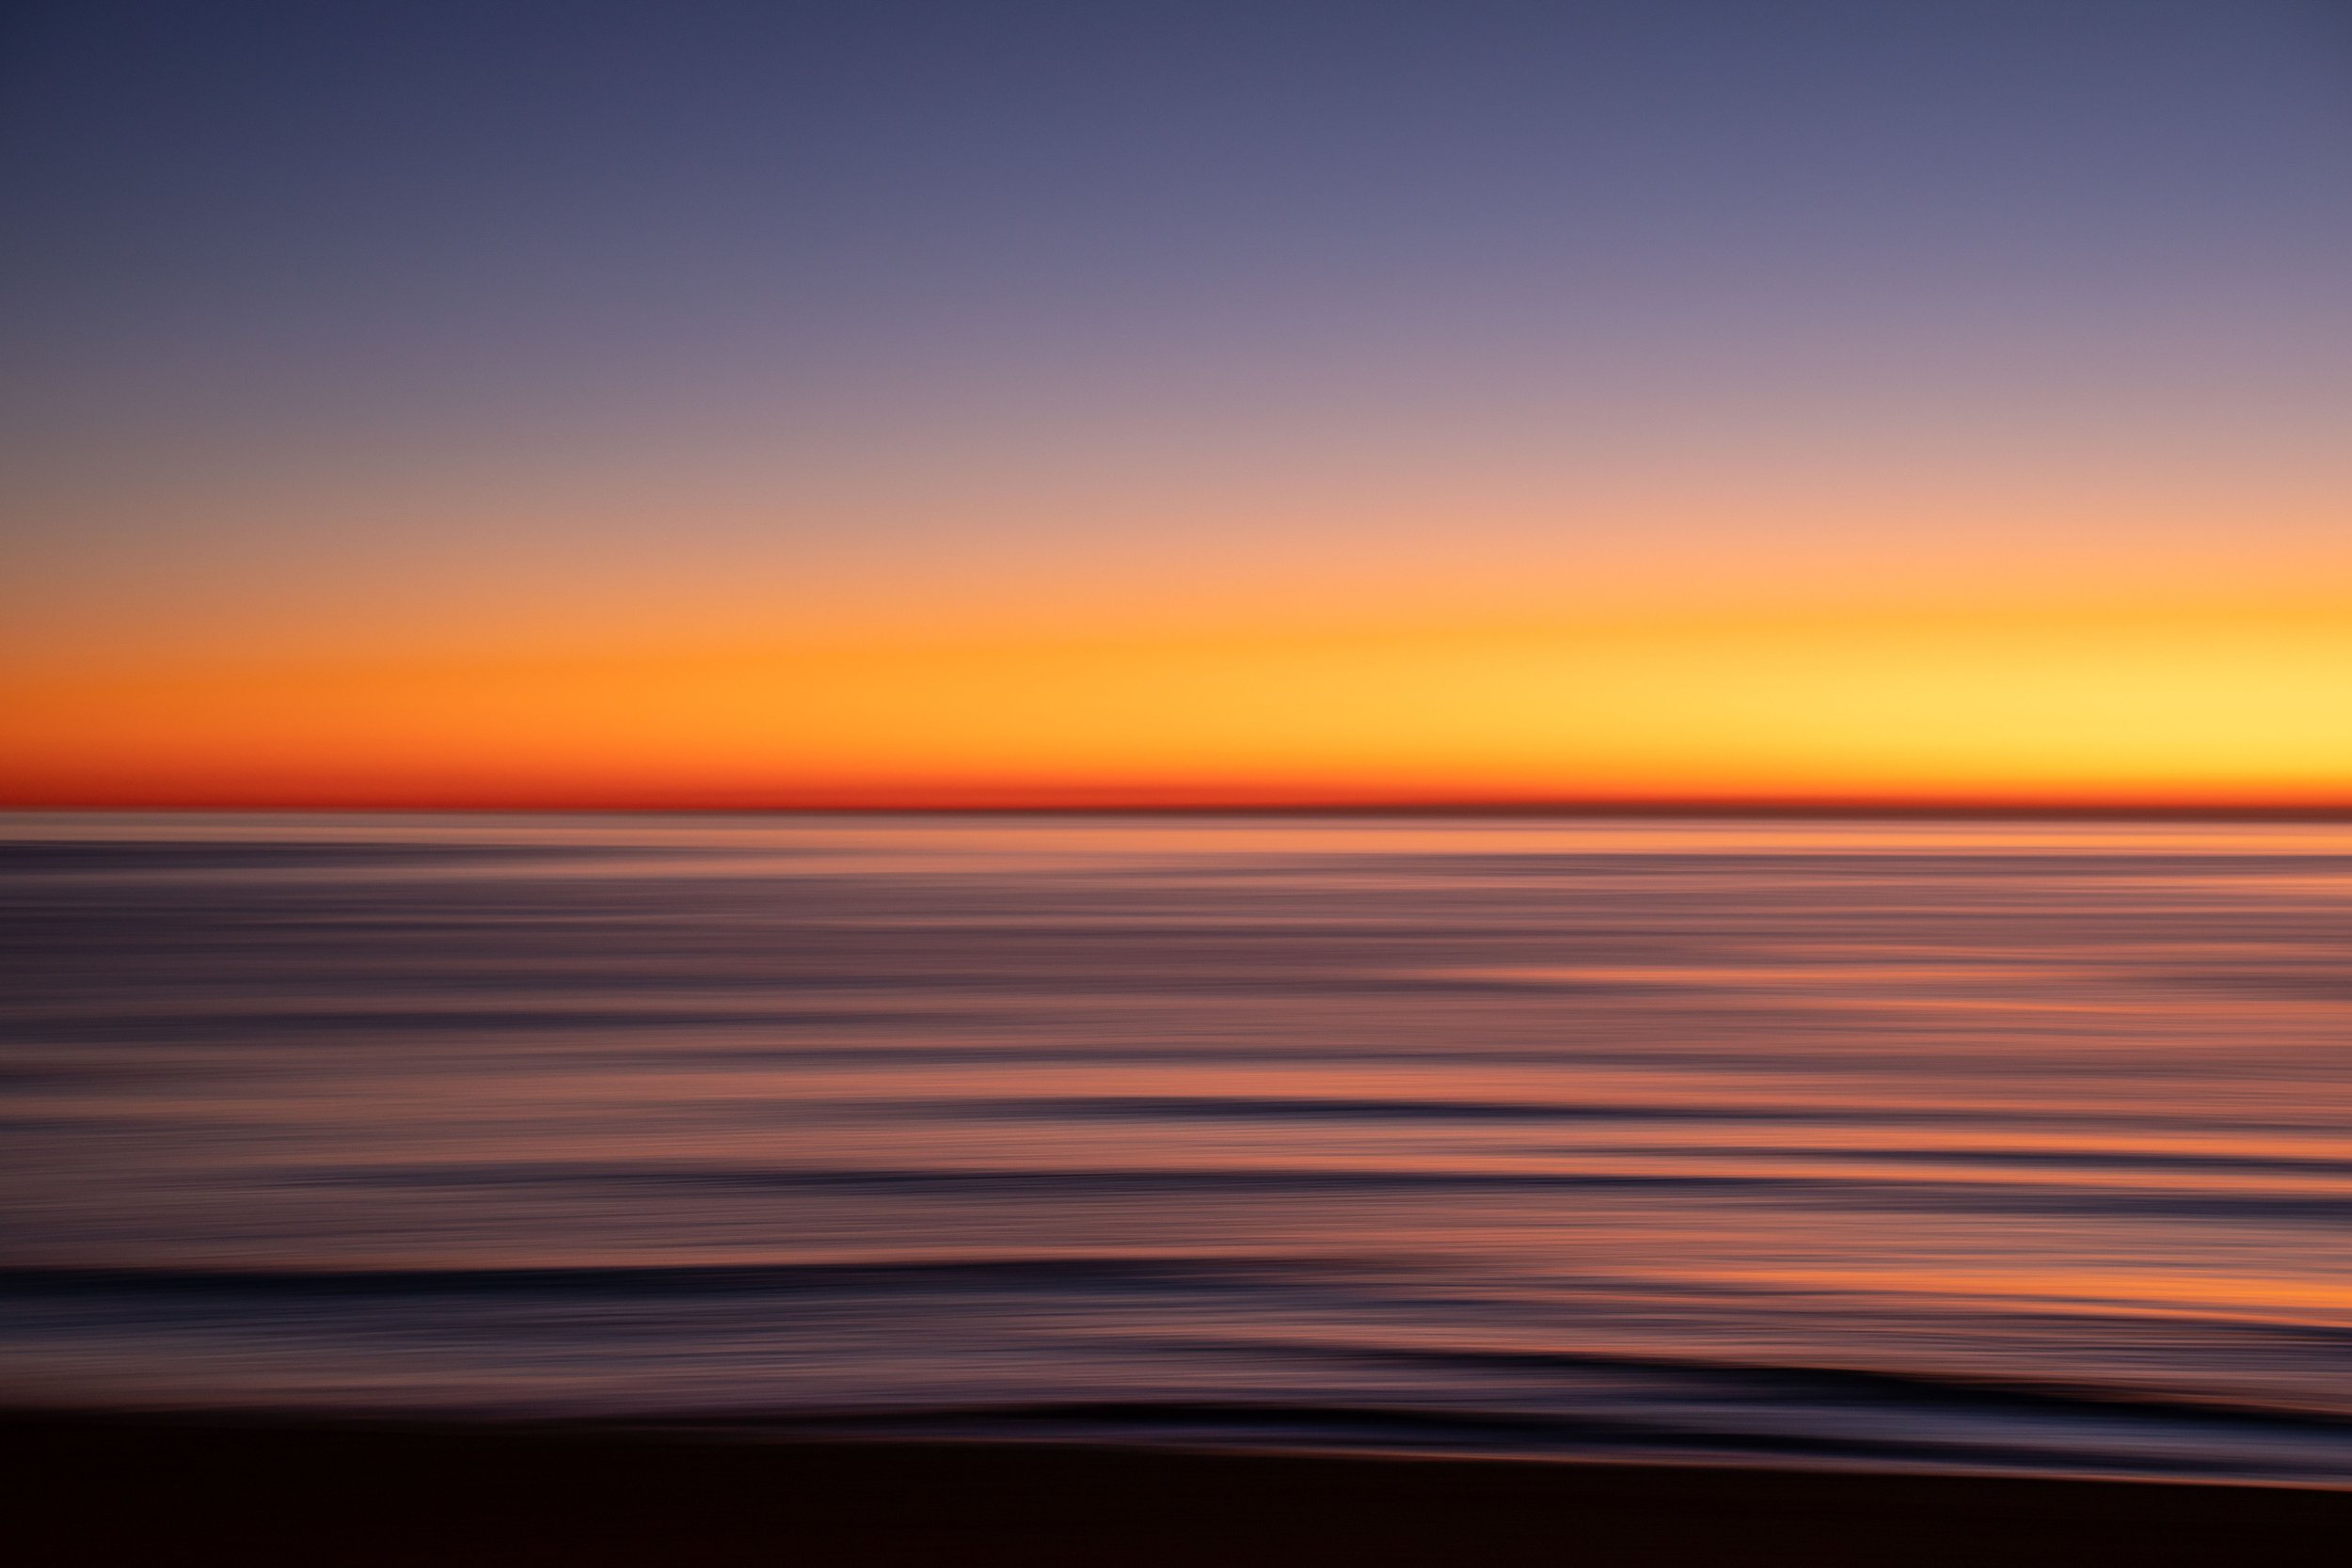 Spanish seascape sunrise photography.